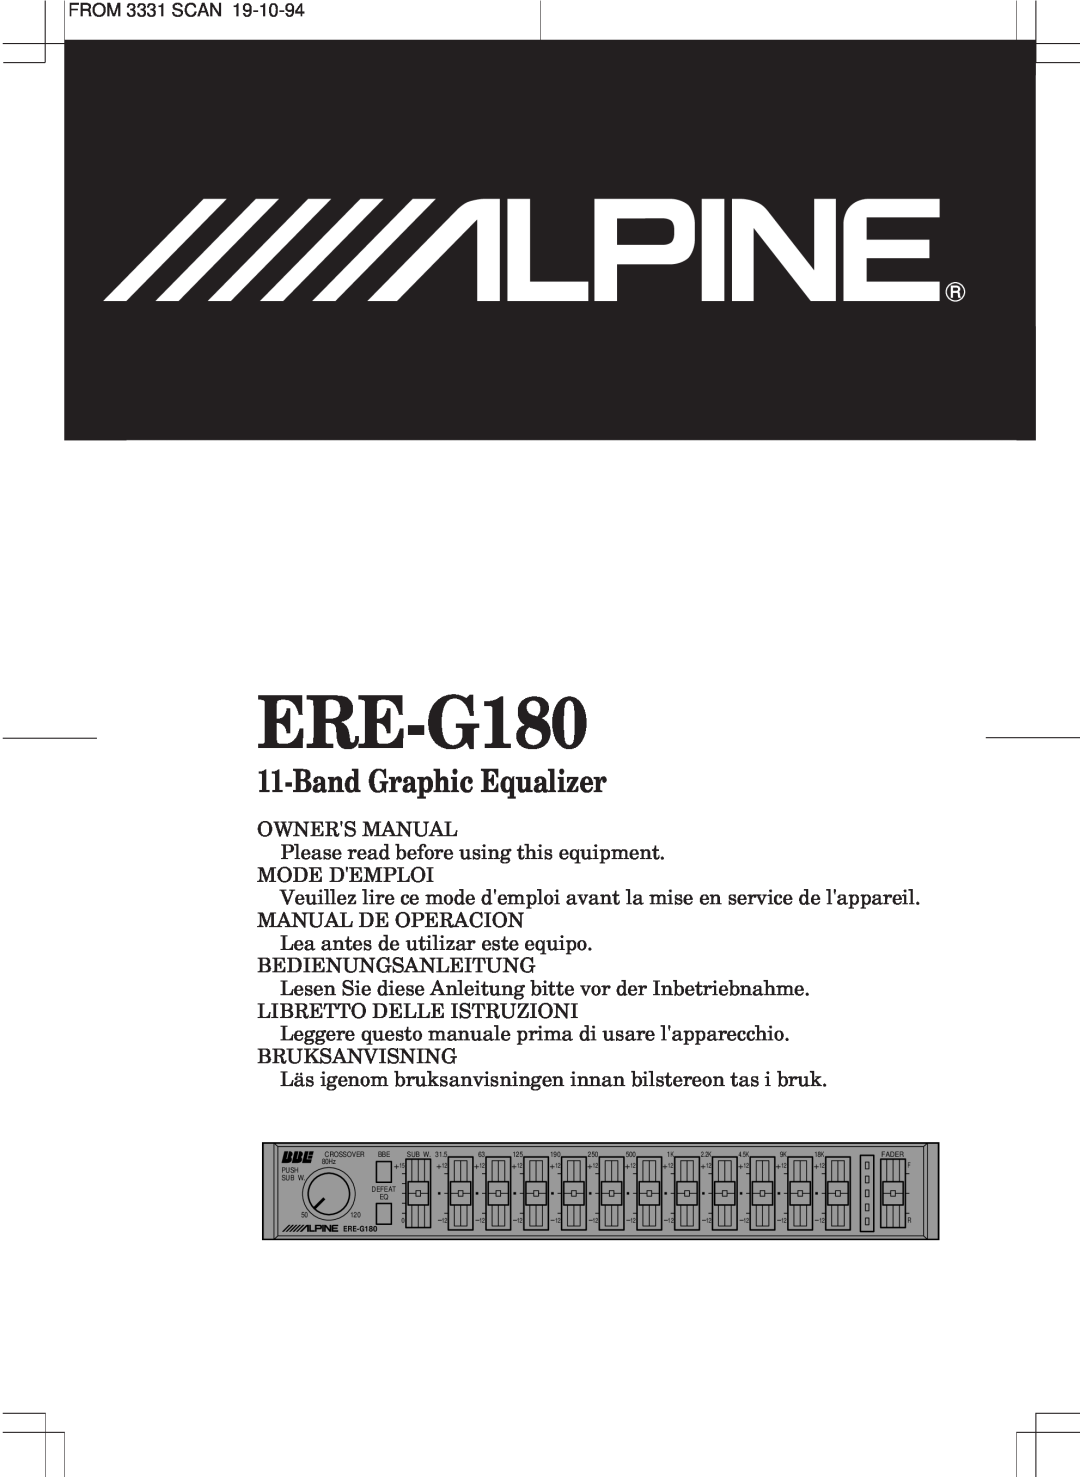 Alpine ERE-G180 owner manual BandGraphic Equalizer 